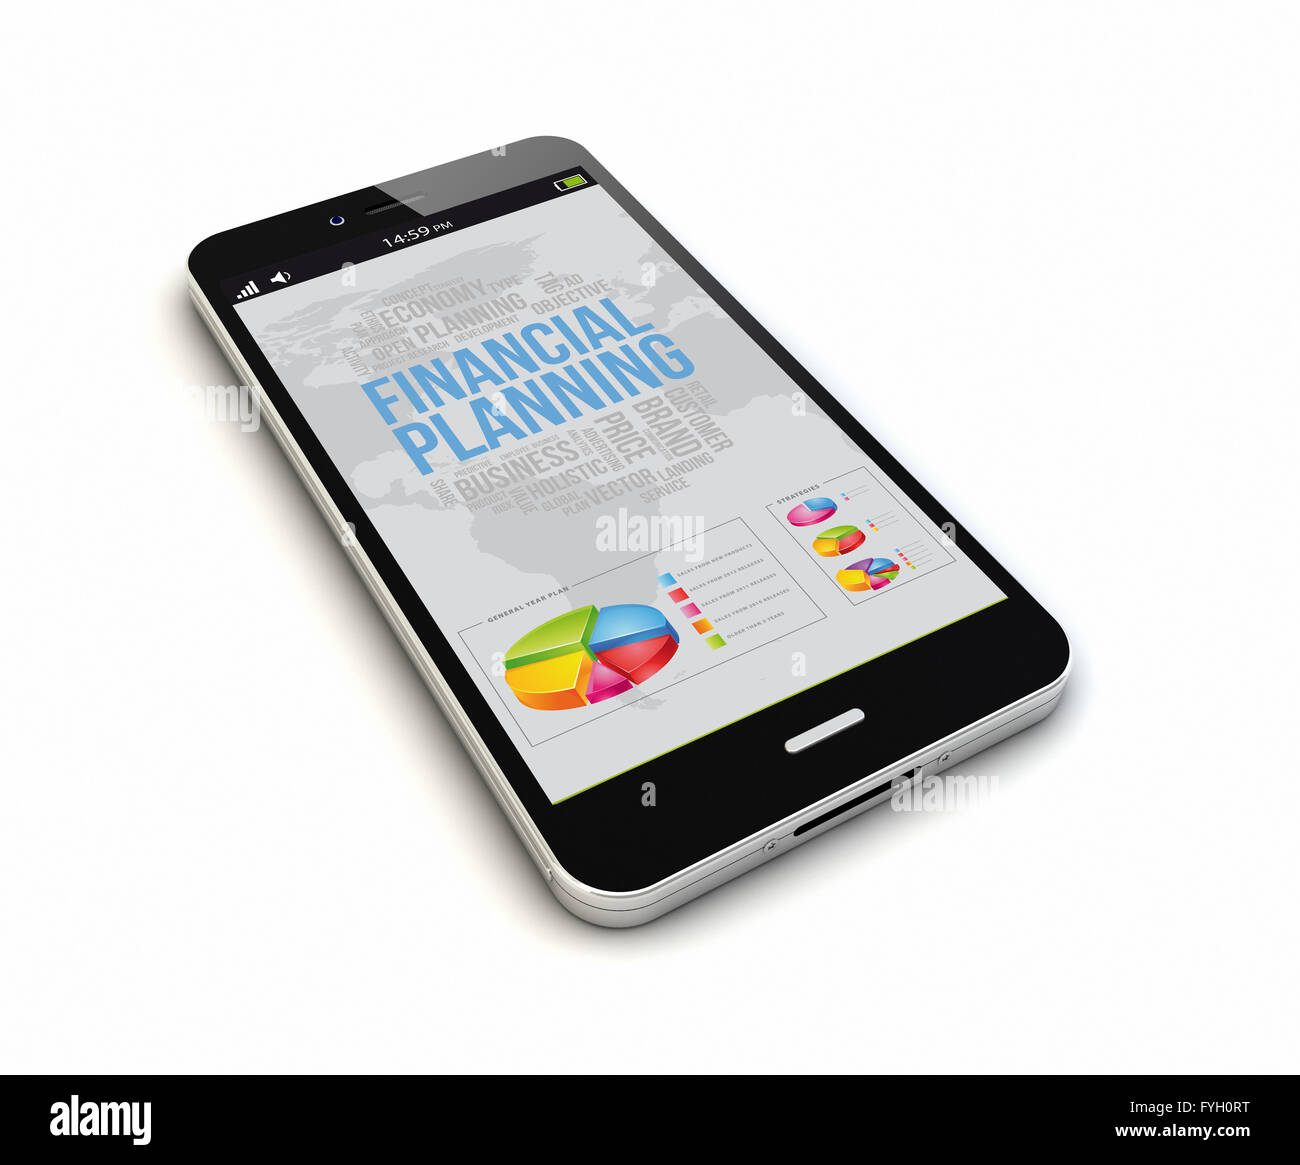 Le rendu d'un smartphone avec la planification financière à l'écran. Écran graphique sont constitués. Banque D'Images